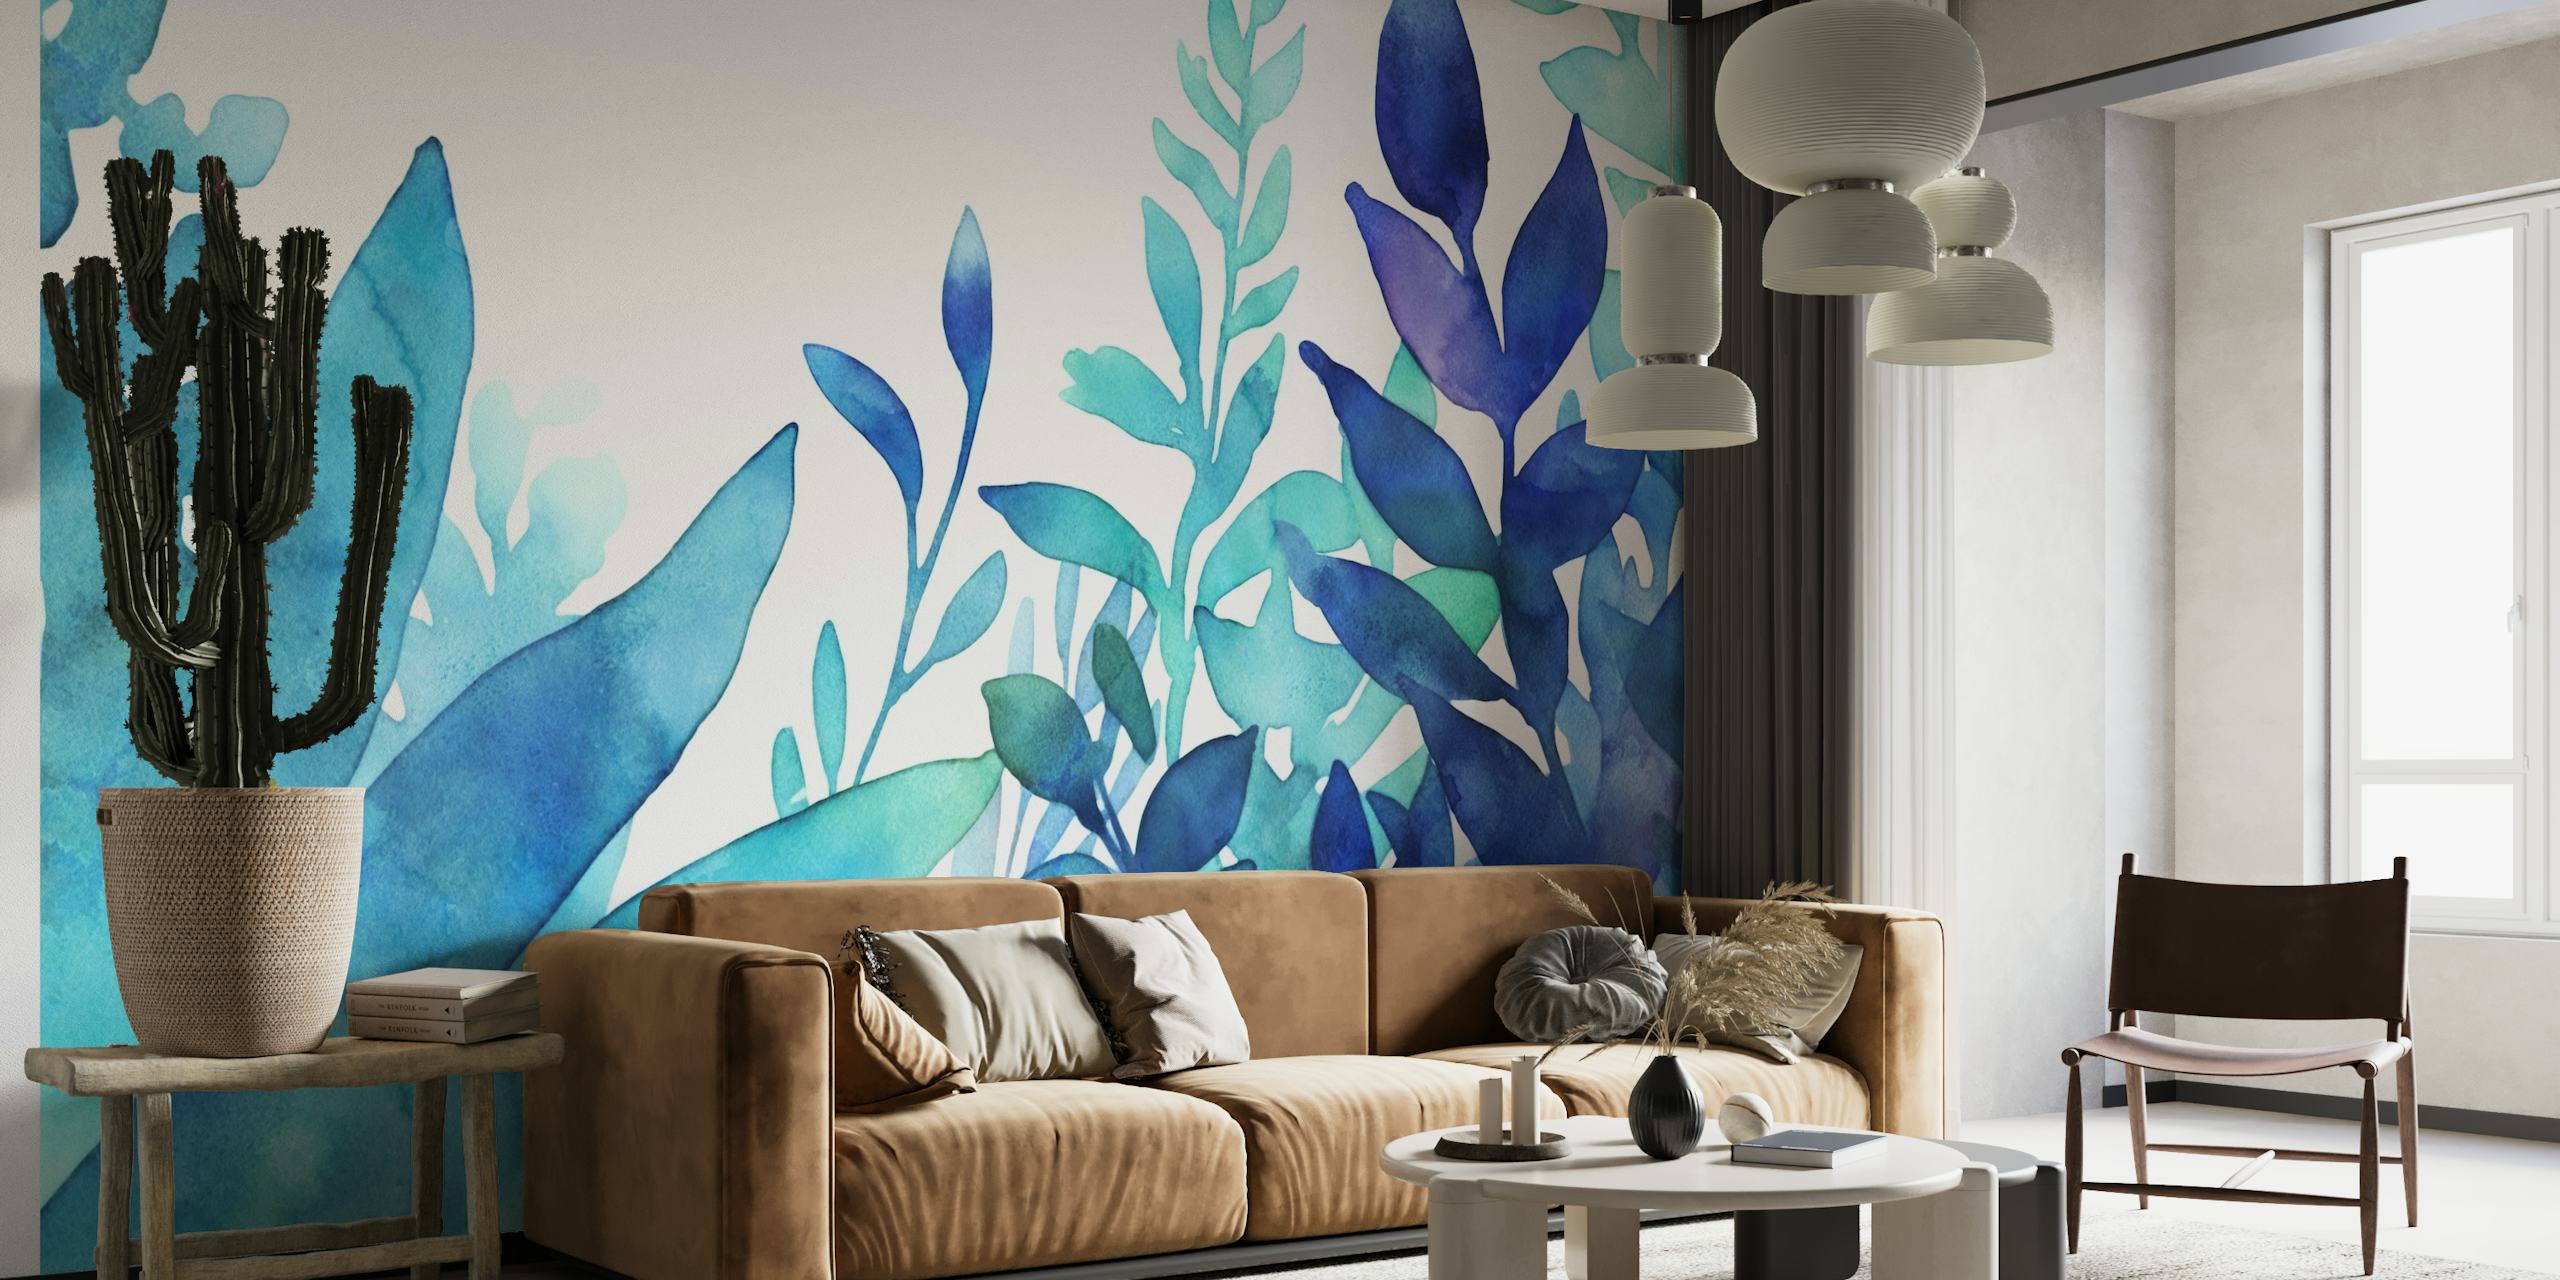 Una exuberante exhibición de follaje de color turquesa y azul en acuarela para un tranquilo mural de pared.